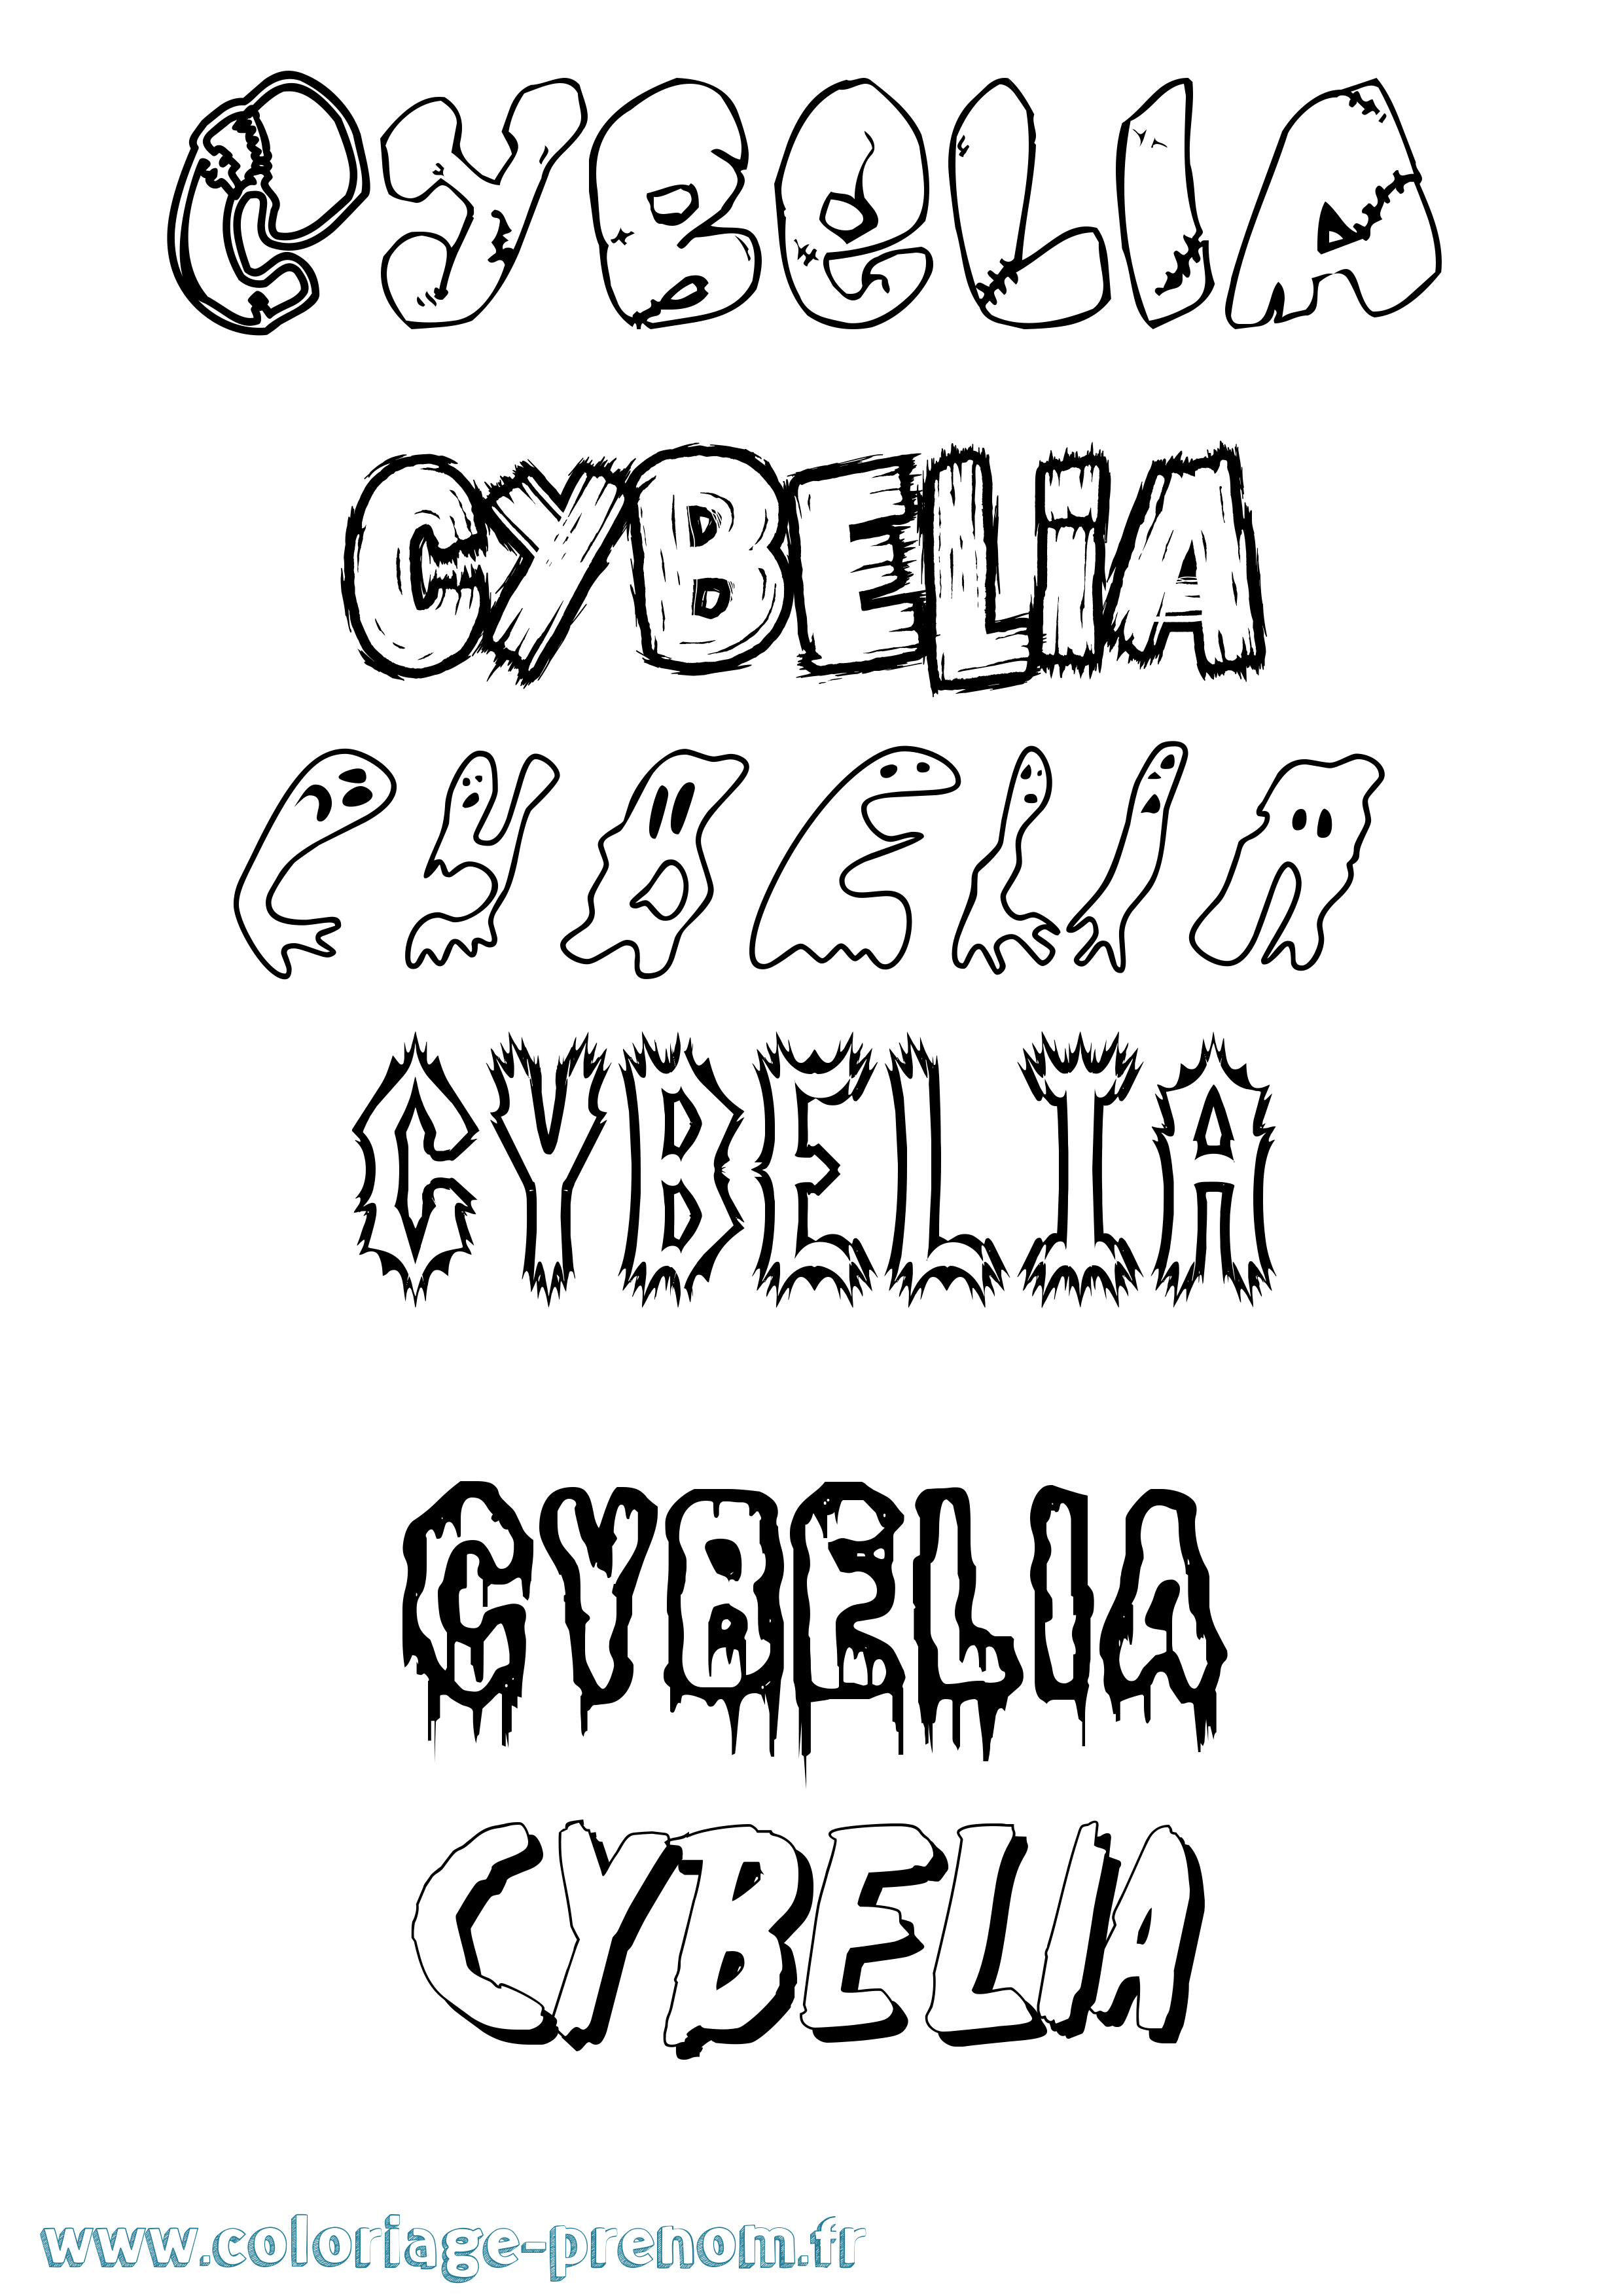 Coloriage prénom Cybelia Frisson